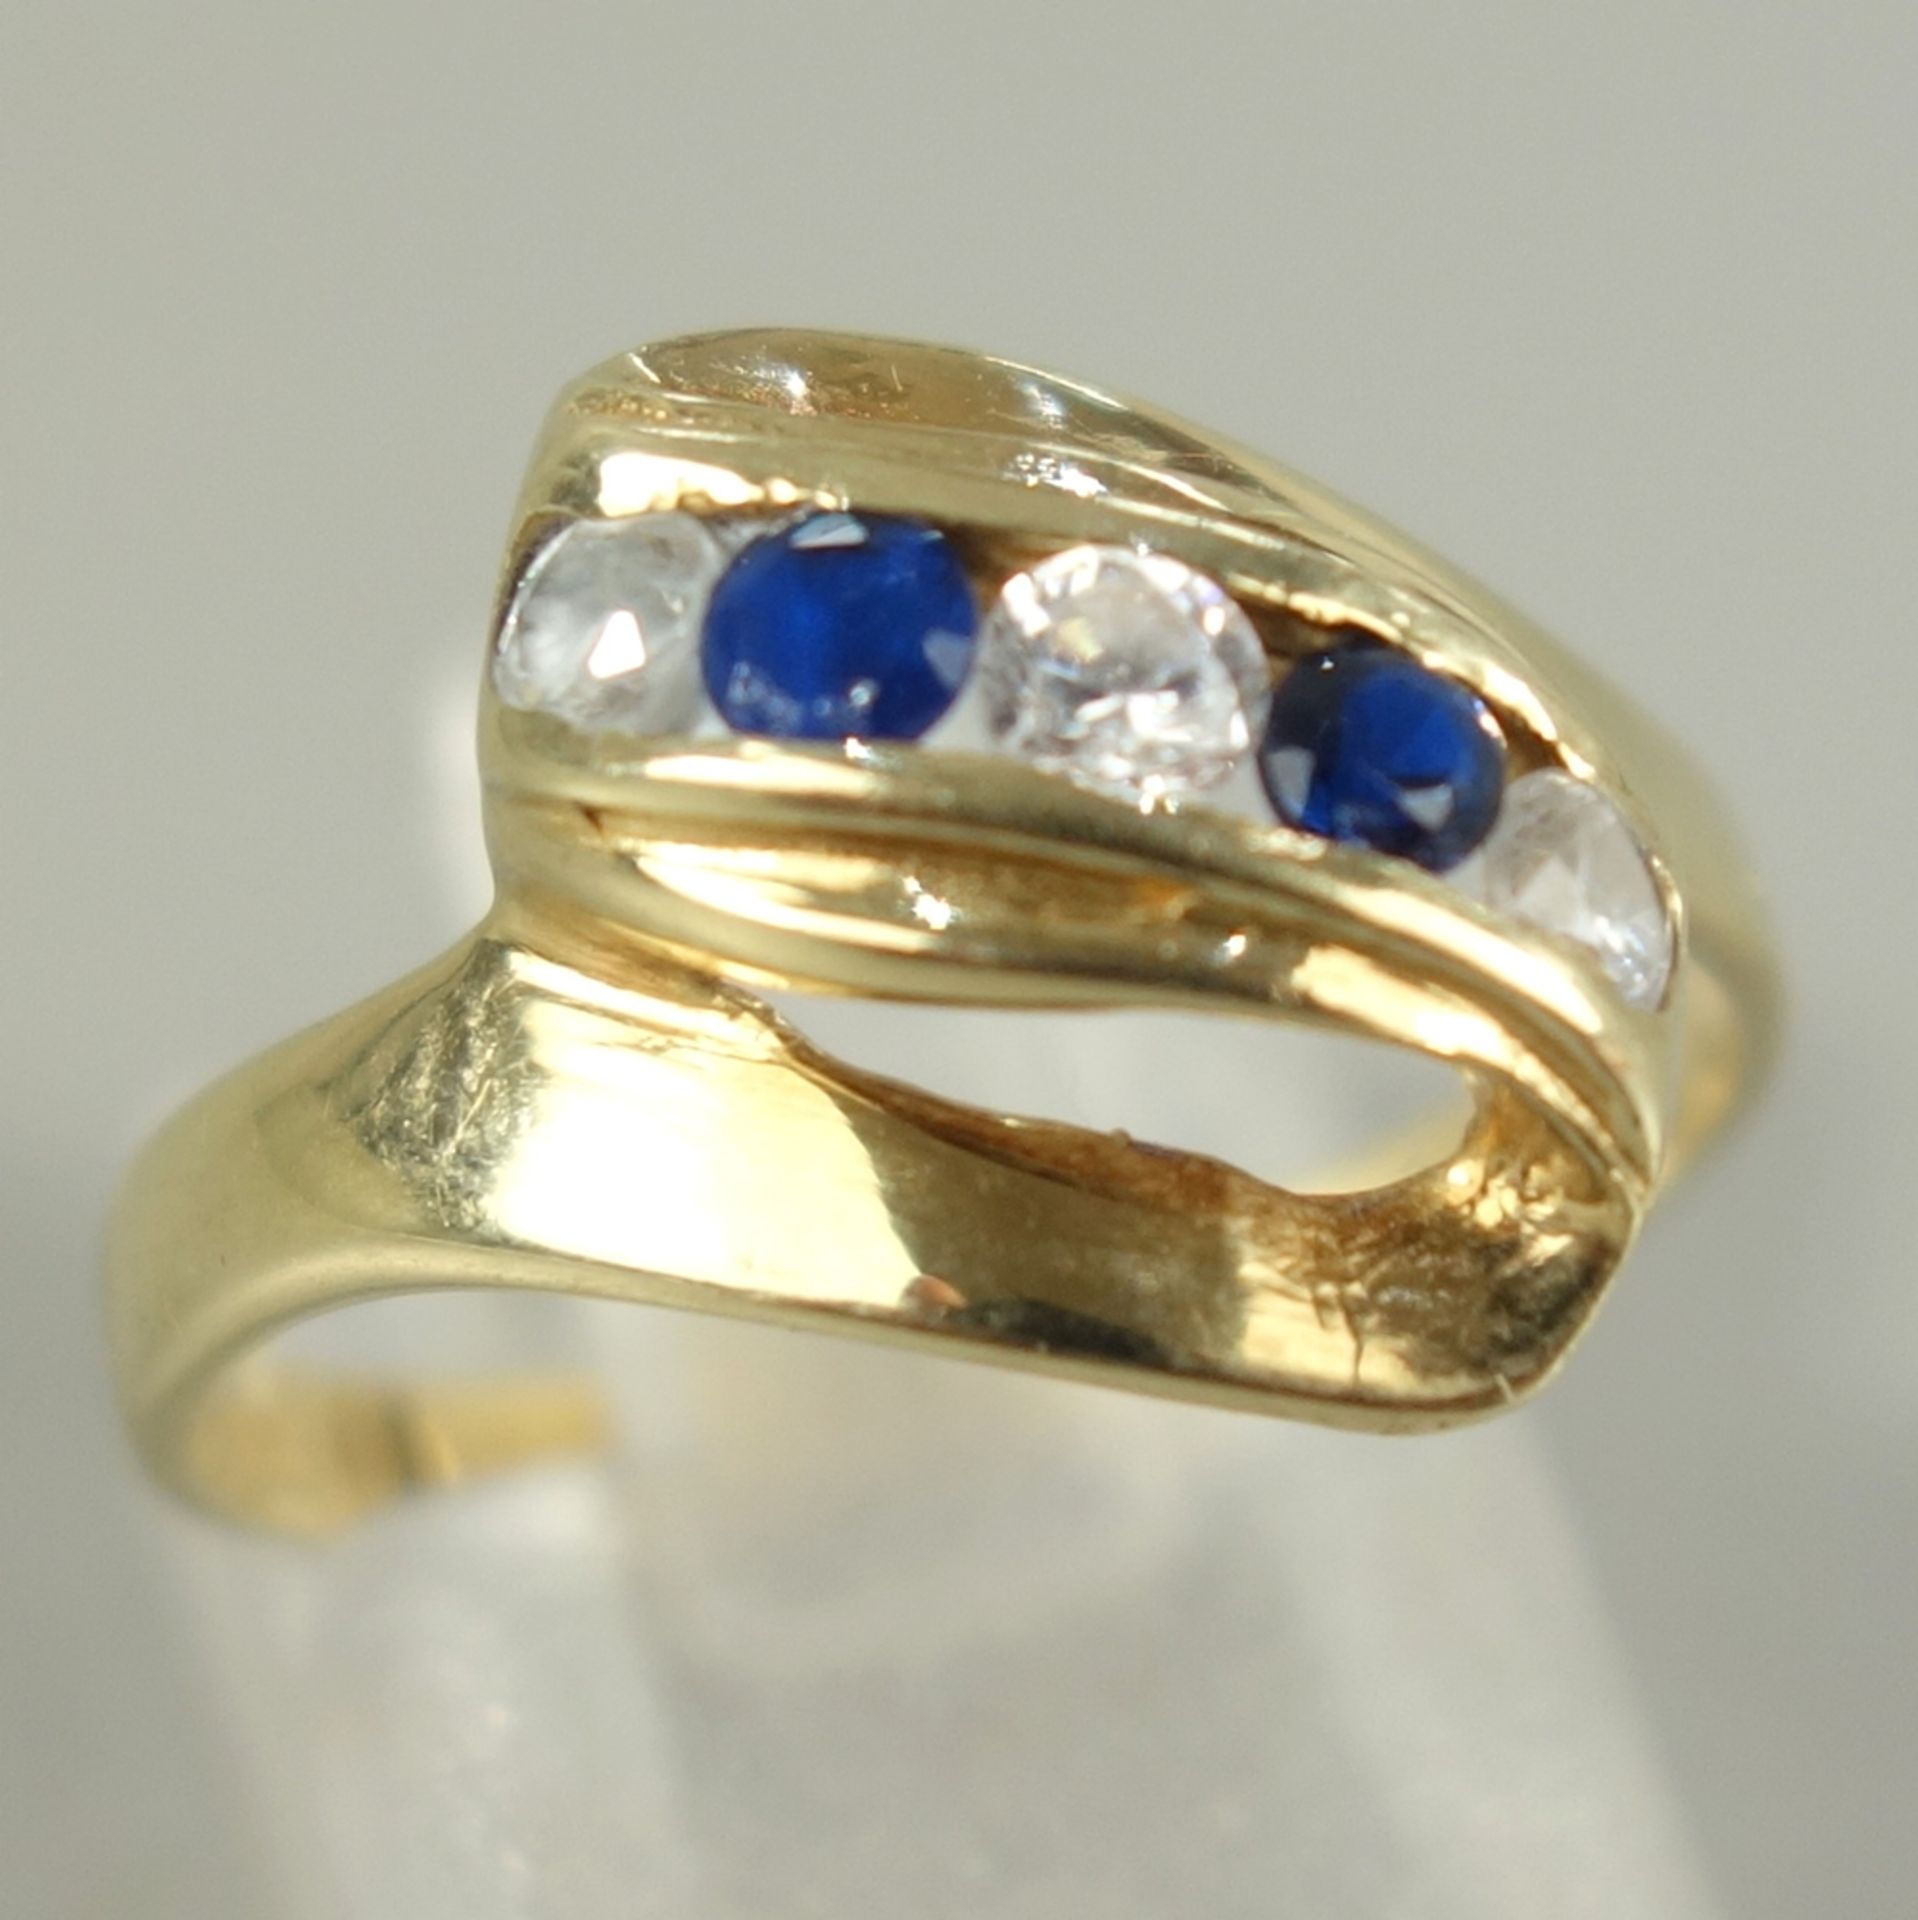 Ring mit Saphiren und Zirkonias, 585er Gold, Gew.2,87g, 2 kleine, runde, facettierte Rubine und 2